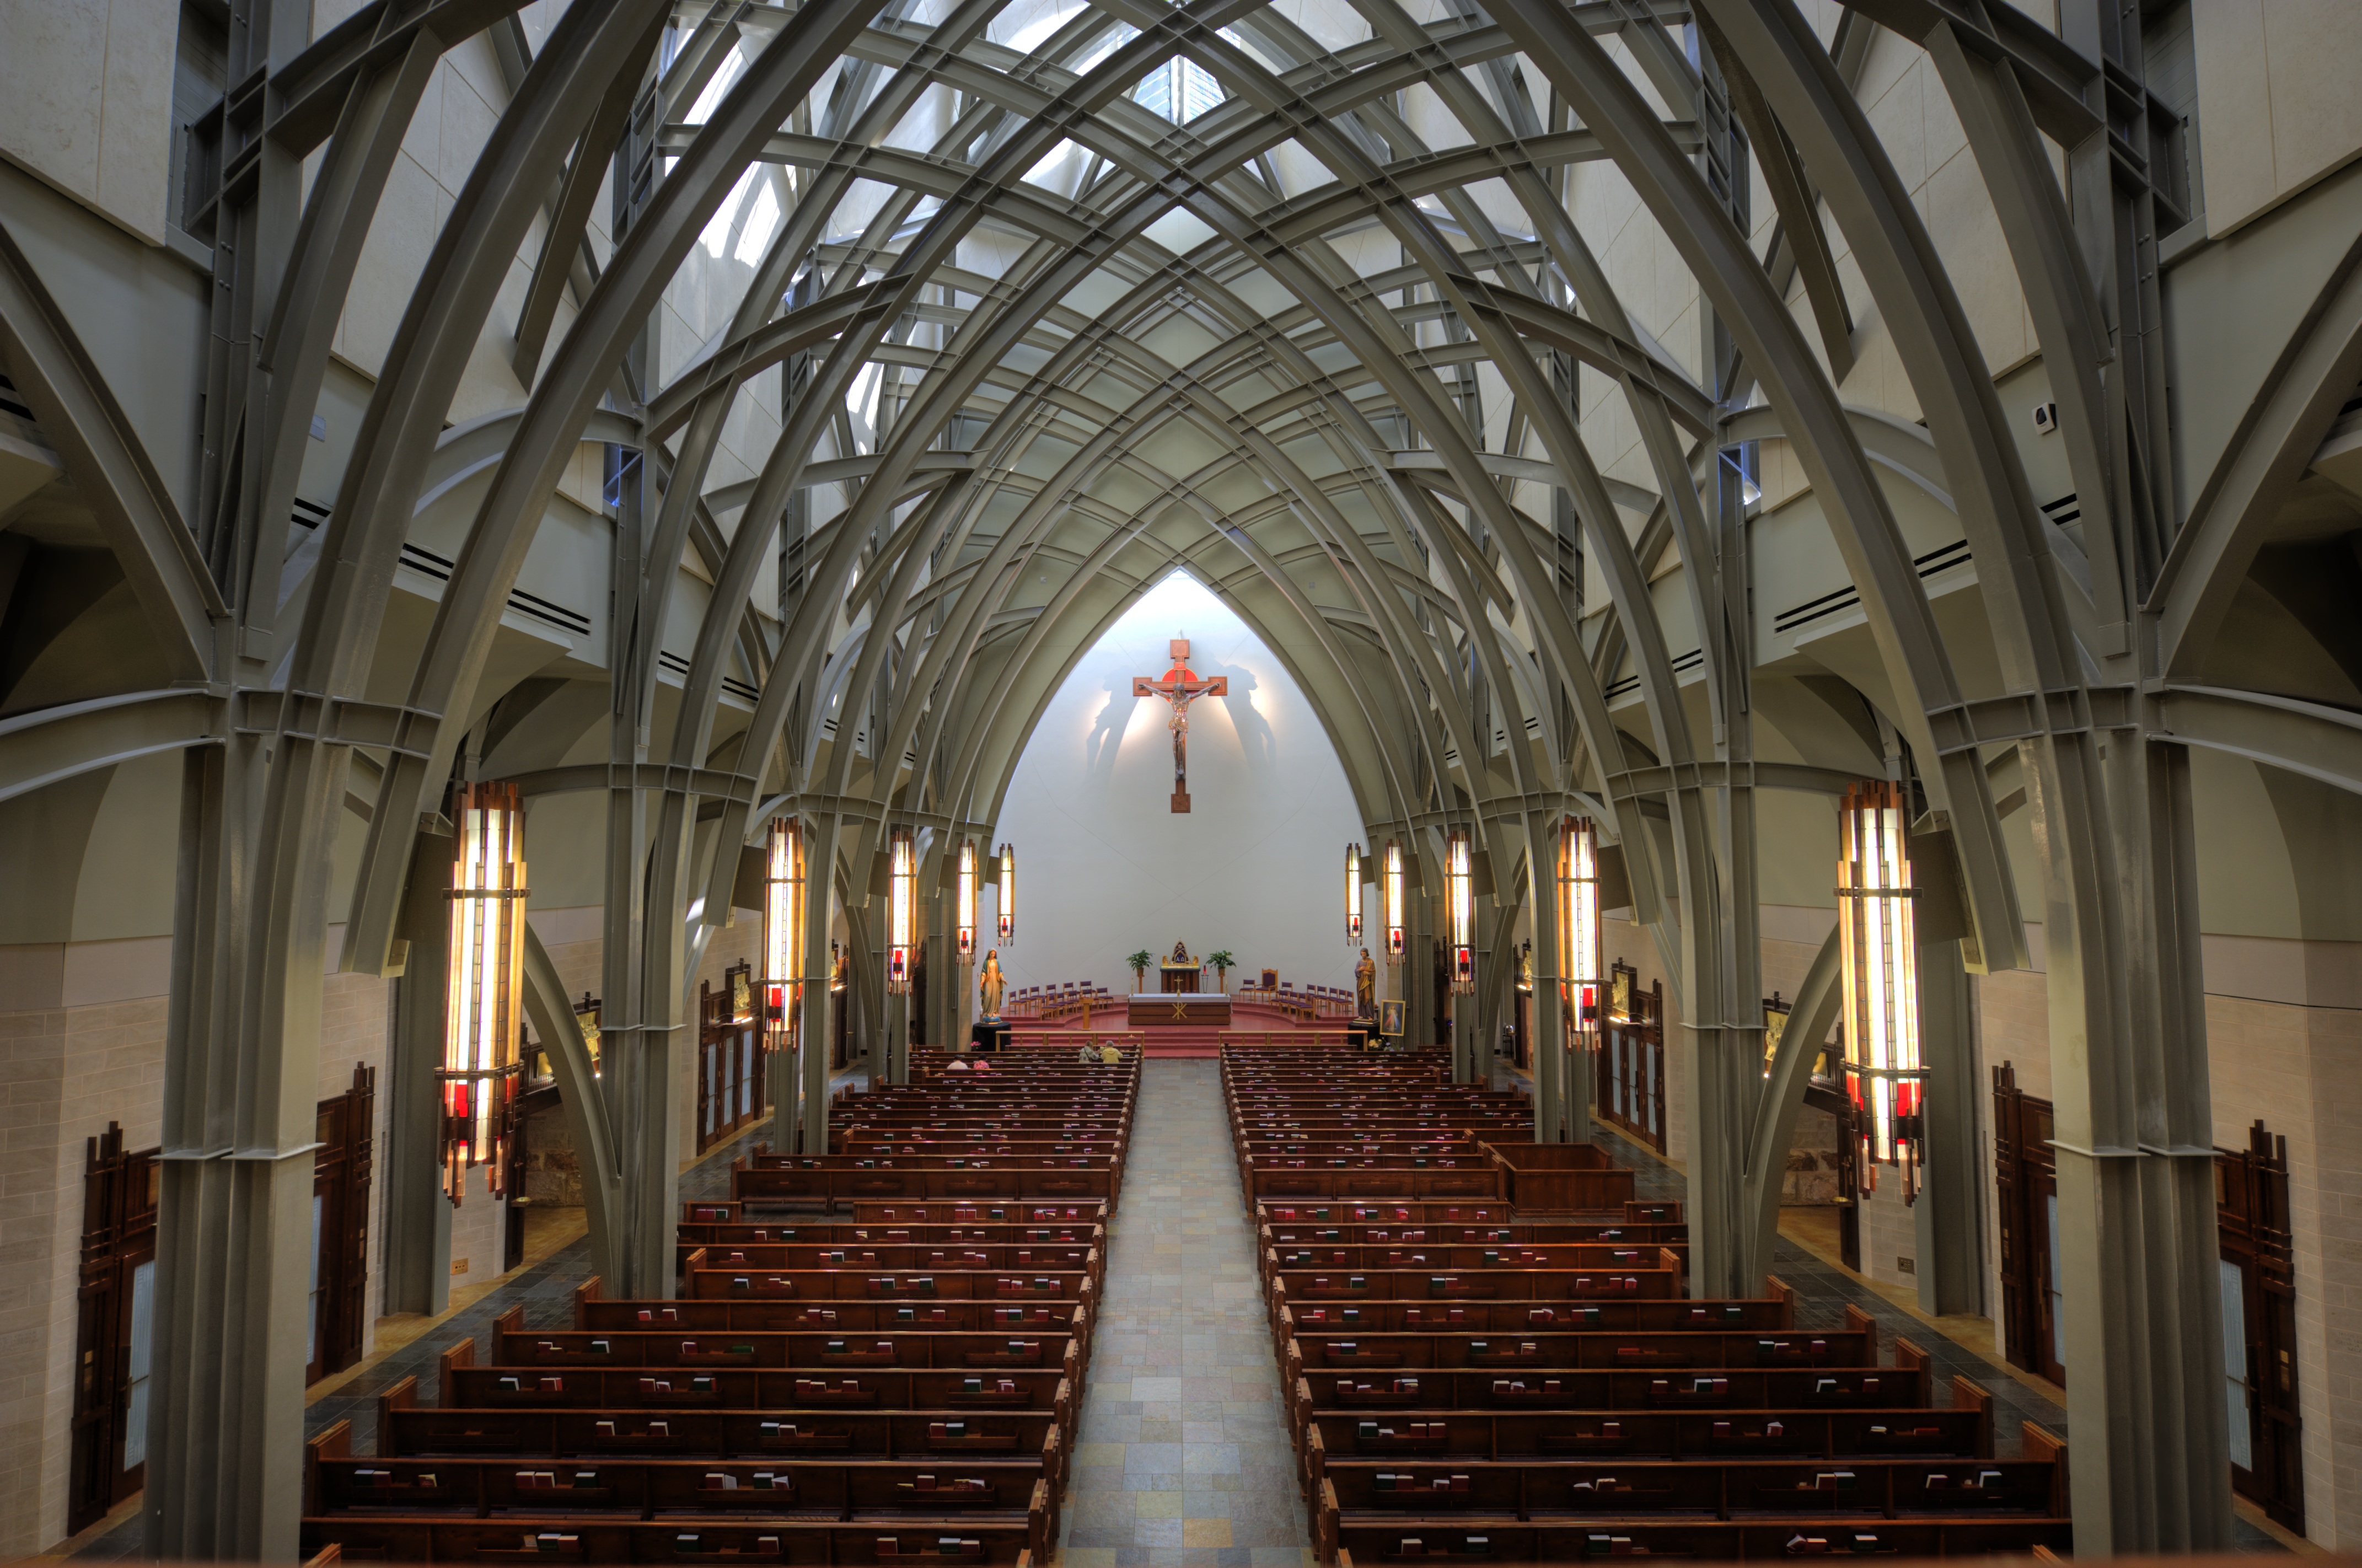 фото католического храма внутри